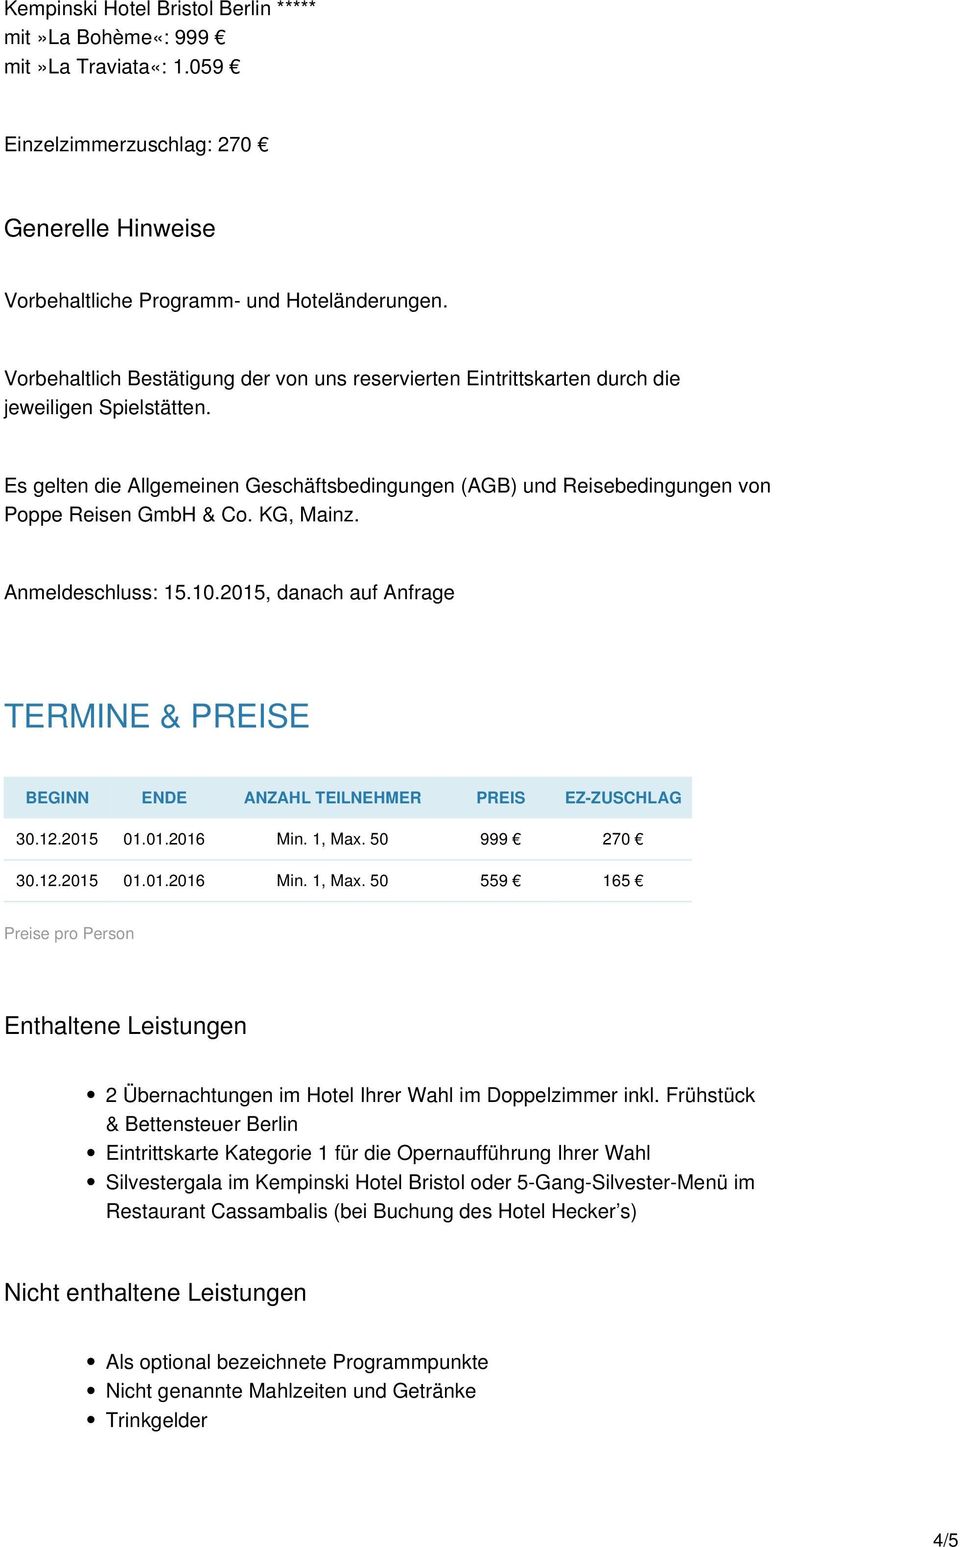 Es gelten die Allgemeinen Geschäftsbedingungen (AGB) und Reisebedingungen von Poppe Reisen GmbH & Co. KG, Mainz. Anmeldeschluss: 15.10.